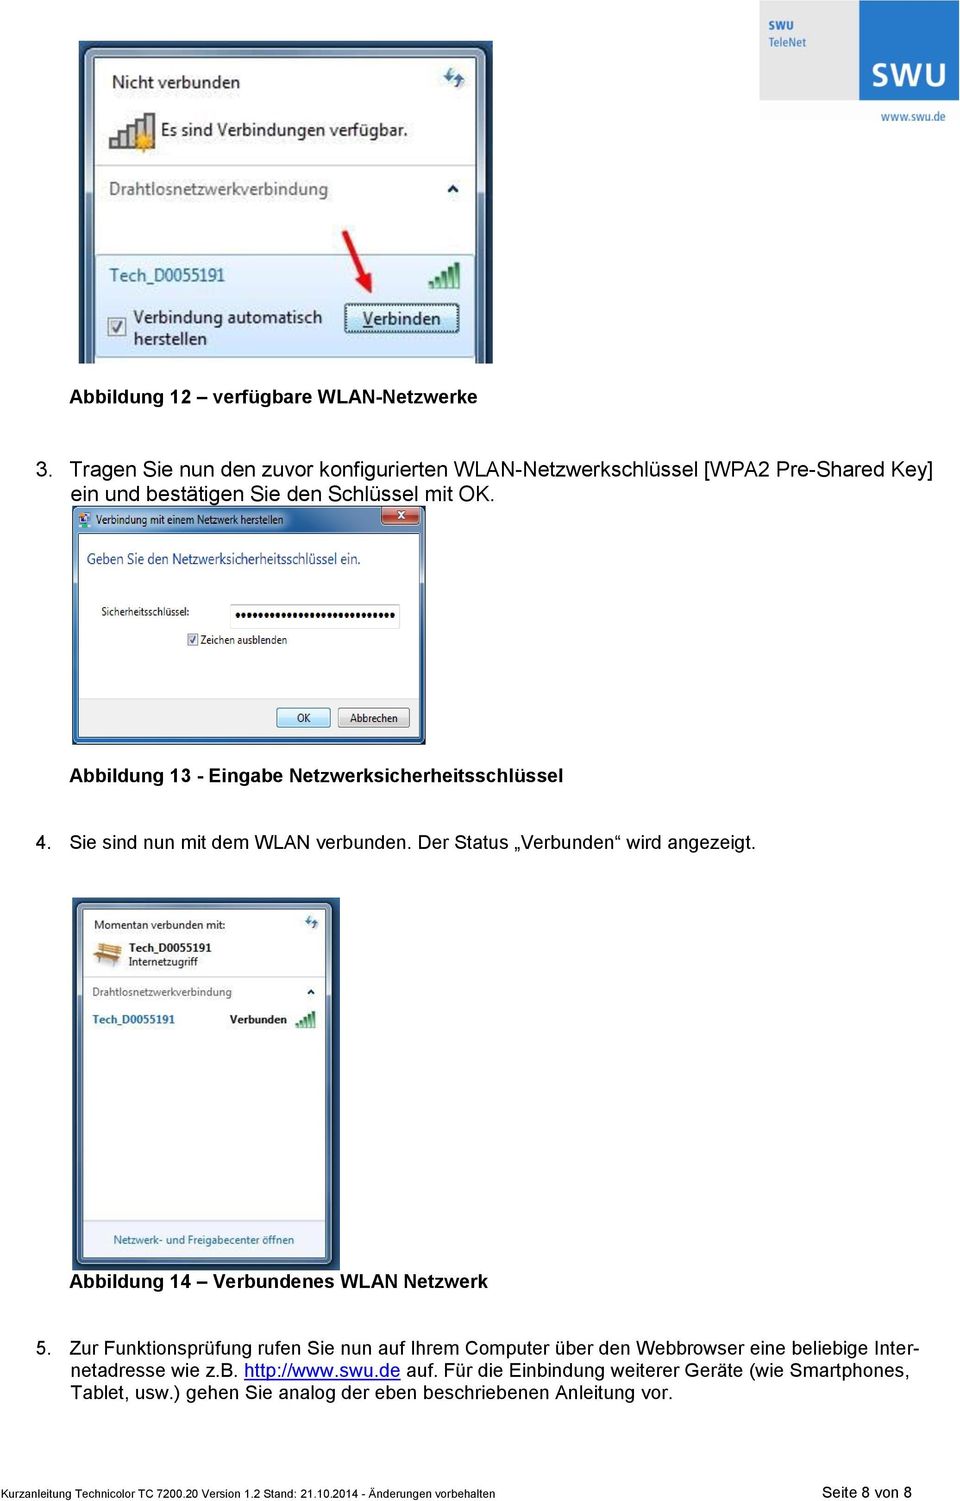 Zur Funktionsprüfung rufen Sie nun auf Ihrem Computer über den Webbrowser eine beliebige Internetadresse wie z.b. http://www.swu.de auf.